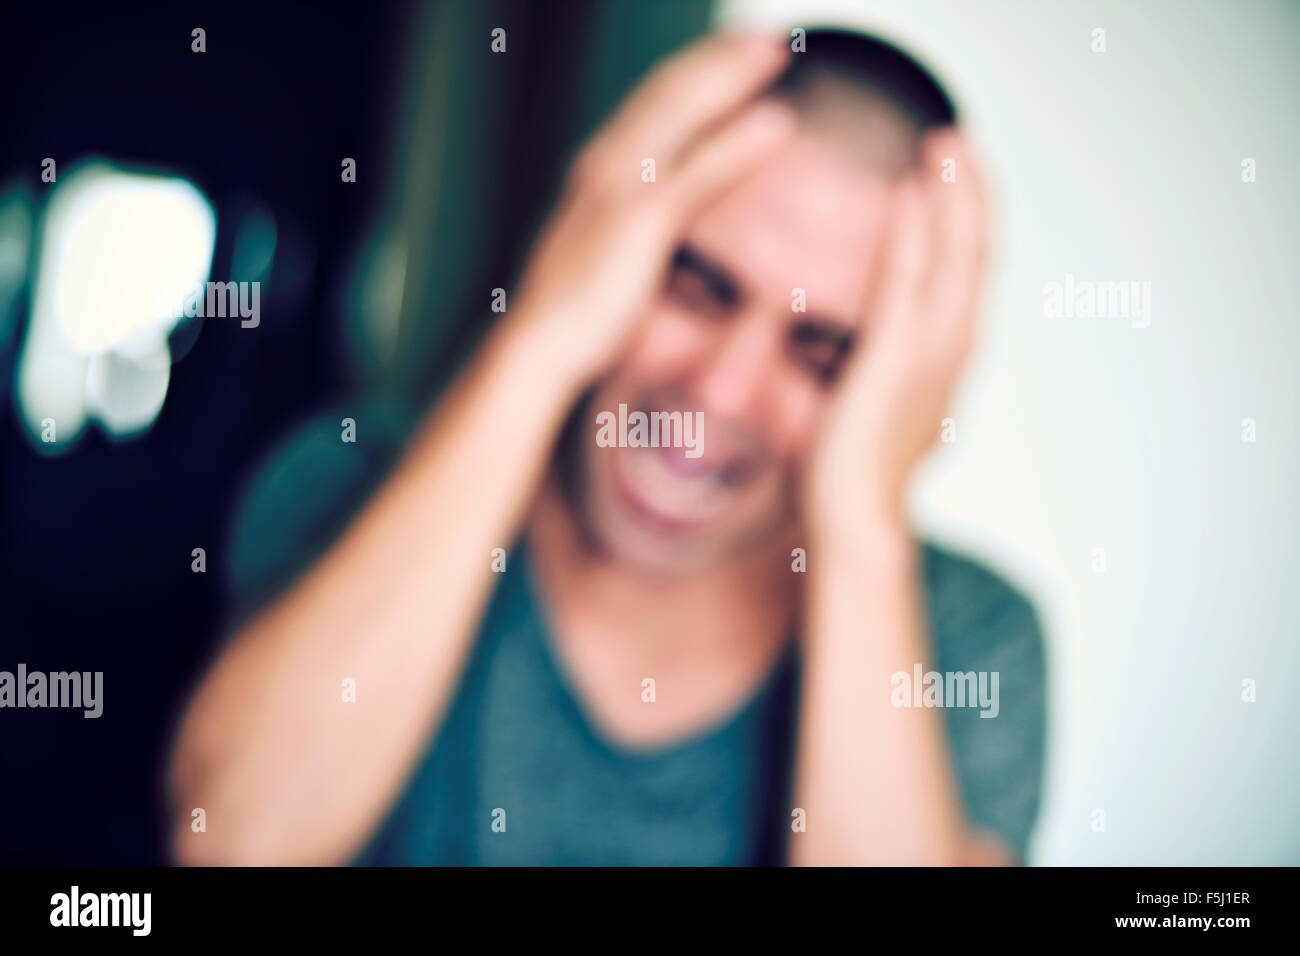 ein unscharfes Bild von einem jungen kaukasischen Mann mit seinen Händen in den Kopf und schreiend im Innenbereich Stockfoto